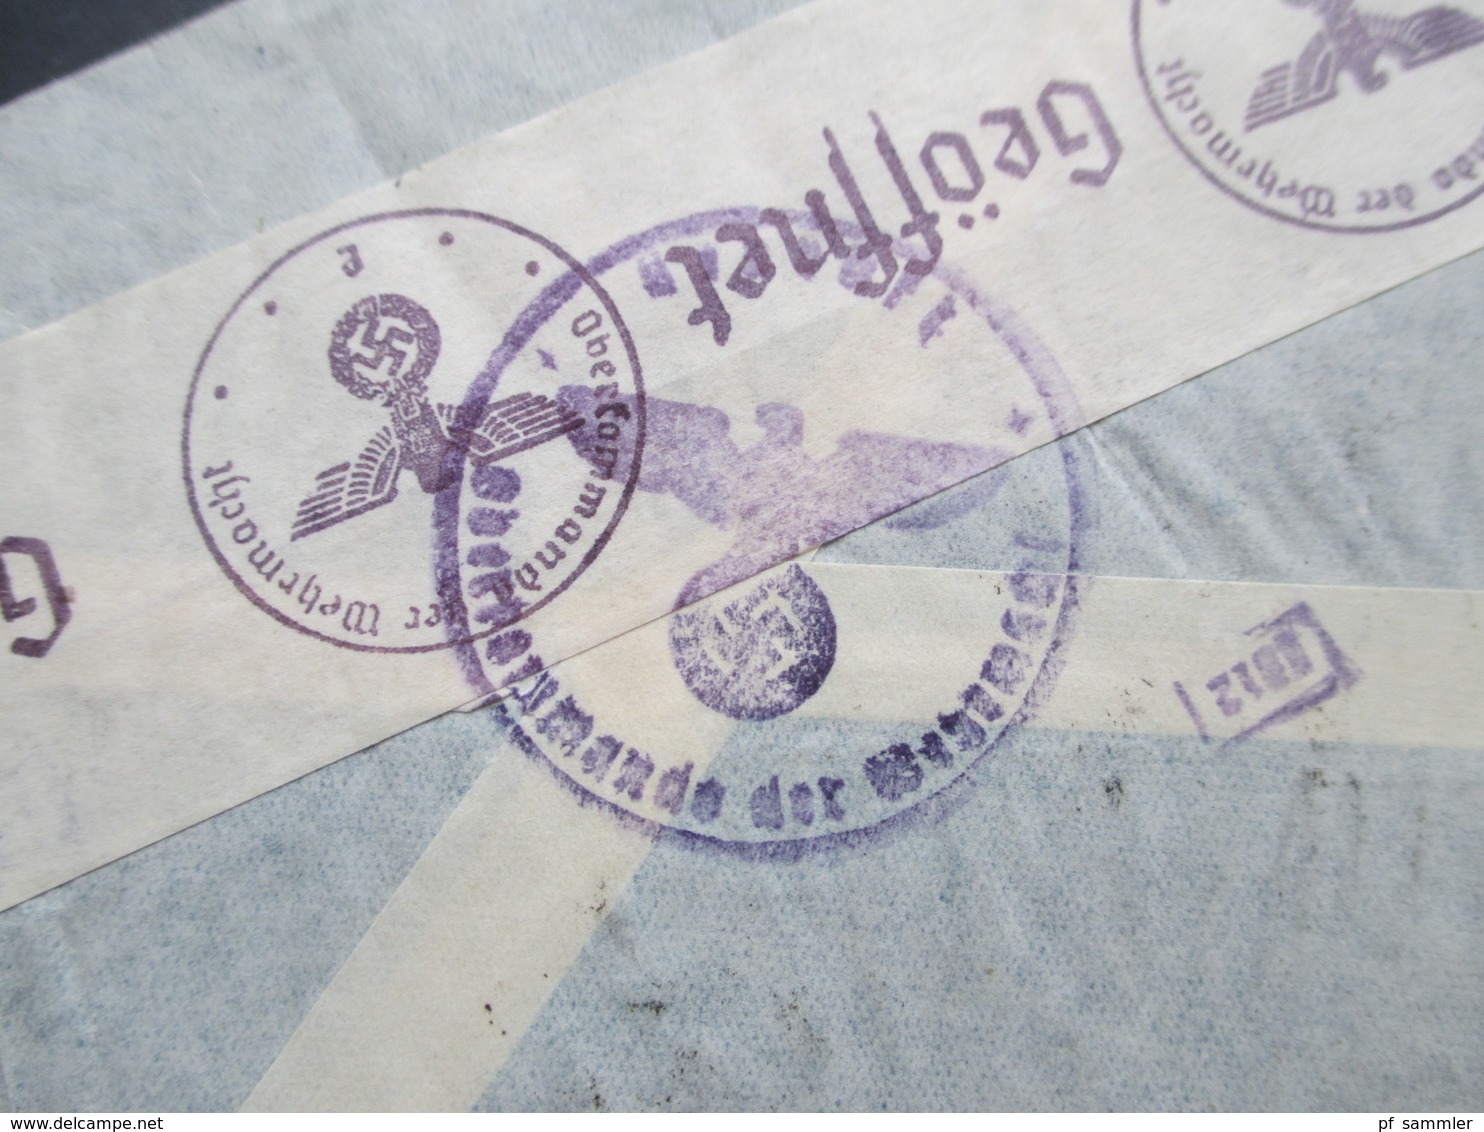 Argentinien 1940 Zensurpost Luftpost Via Condor Mit Mehrfachzensur Der Wehrmacht OKW Verschlussstreifen Geöffnet - Briefe U. Dokumente